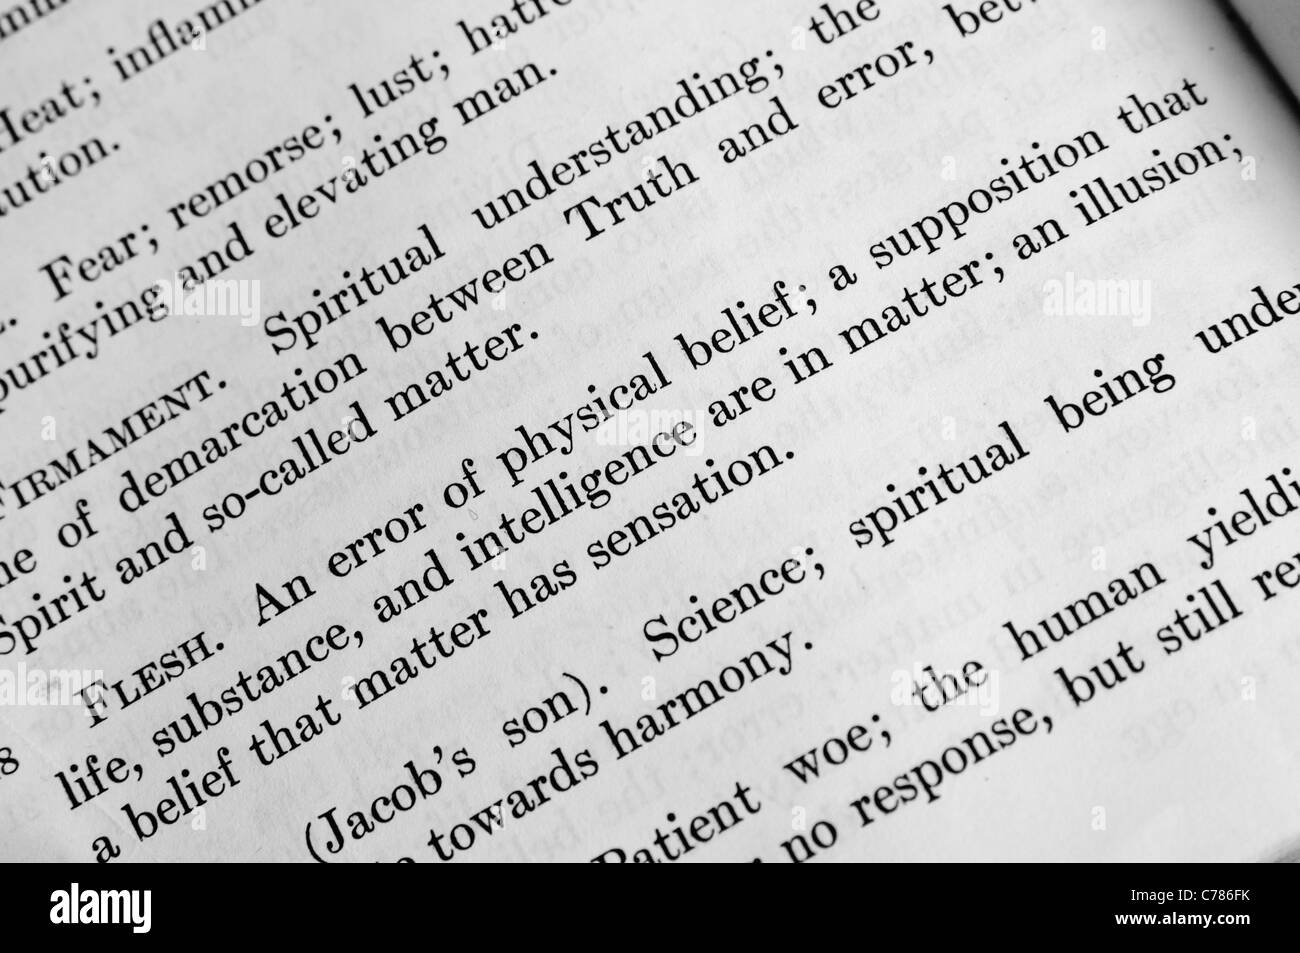 La Christian Science la definición de "carne" en "Ciencia y Salud" de Mary Baker Eddy Foto de stock